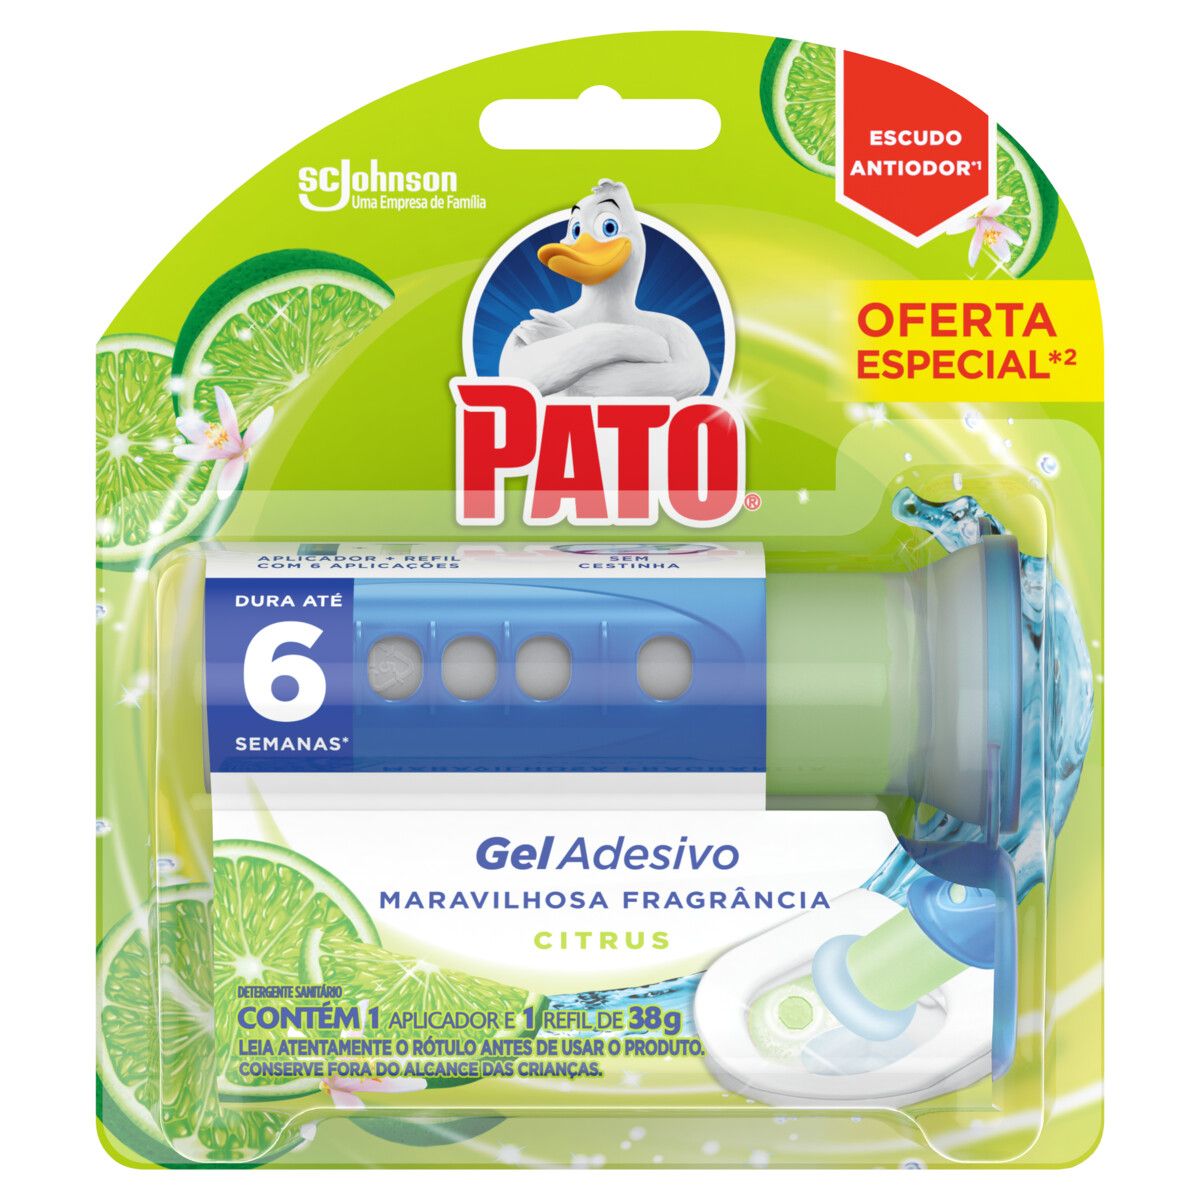 Detergente Sanitário Pato Gel Adesivo com Aplicador Citrus Refil 38g